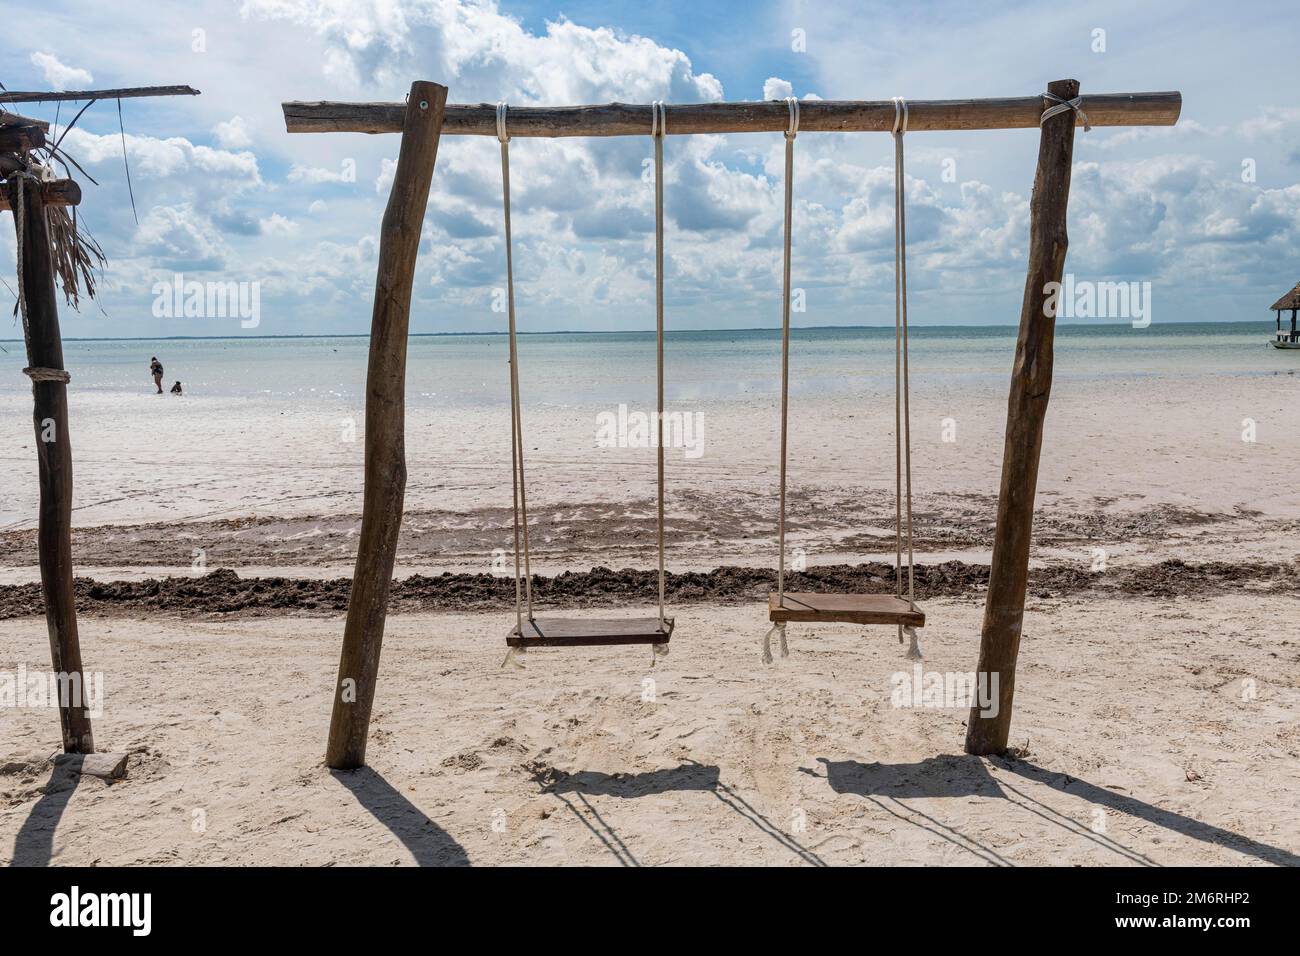 Balancez sur une plage de sable blanc, île de Holbox, Yucatan Mexique Banque D'Images